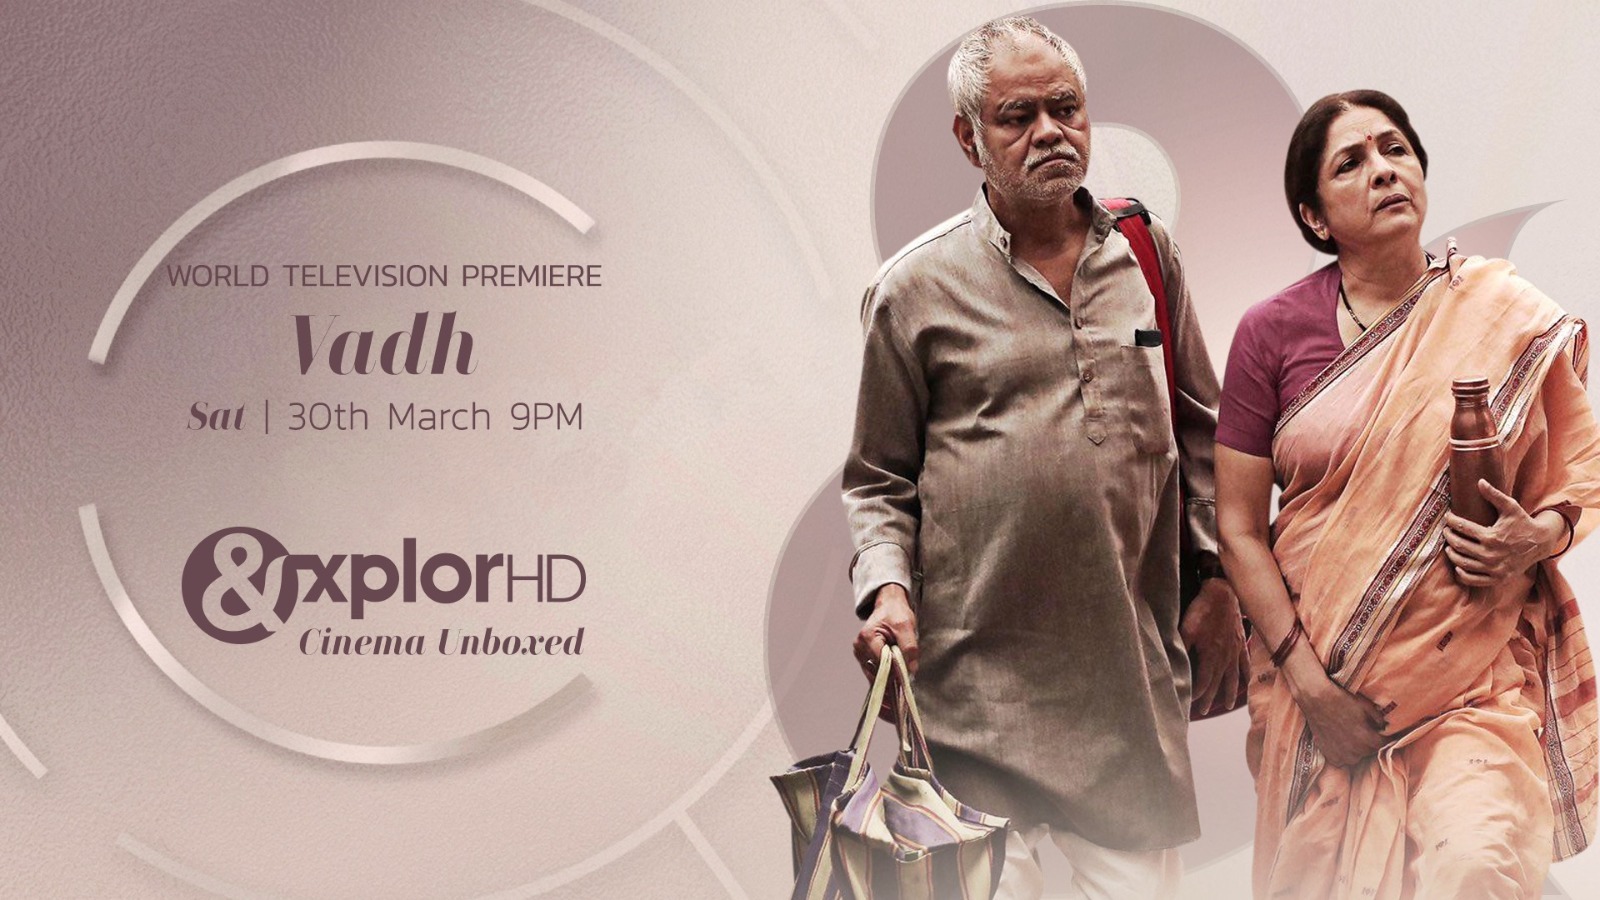 वध का एचडी पर प्रीमीयर 30 मार्च को होगा रिलीज, नए रूप में दिखेंगी संजय मिश्रा नीना गुप्ता की जोड़ी